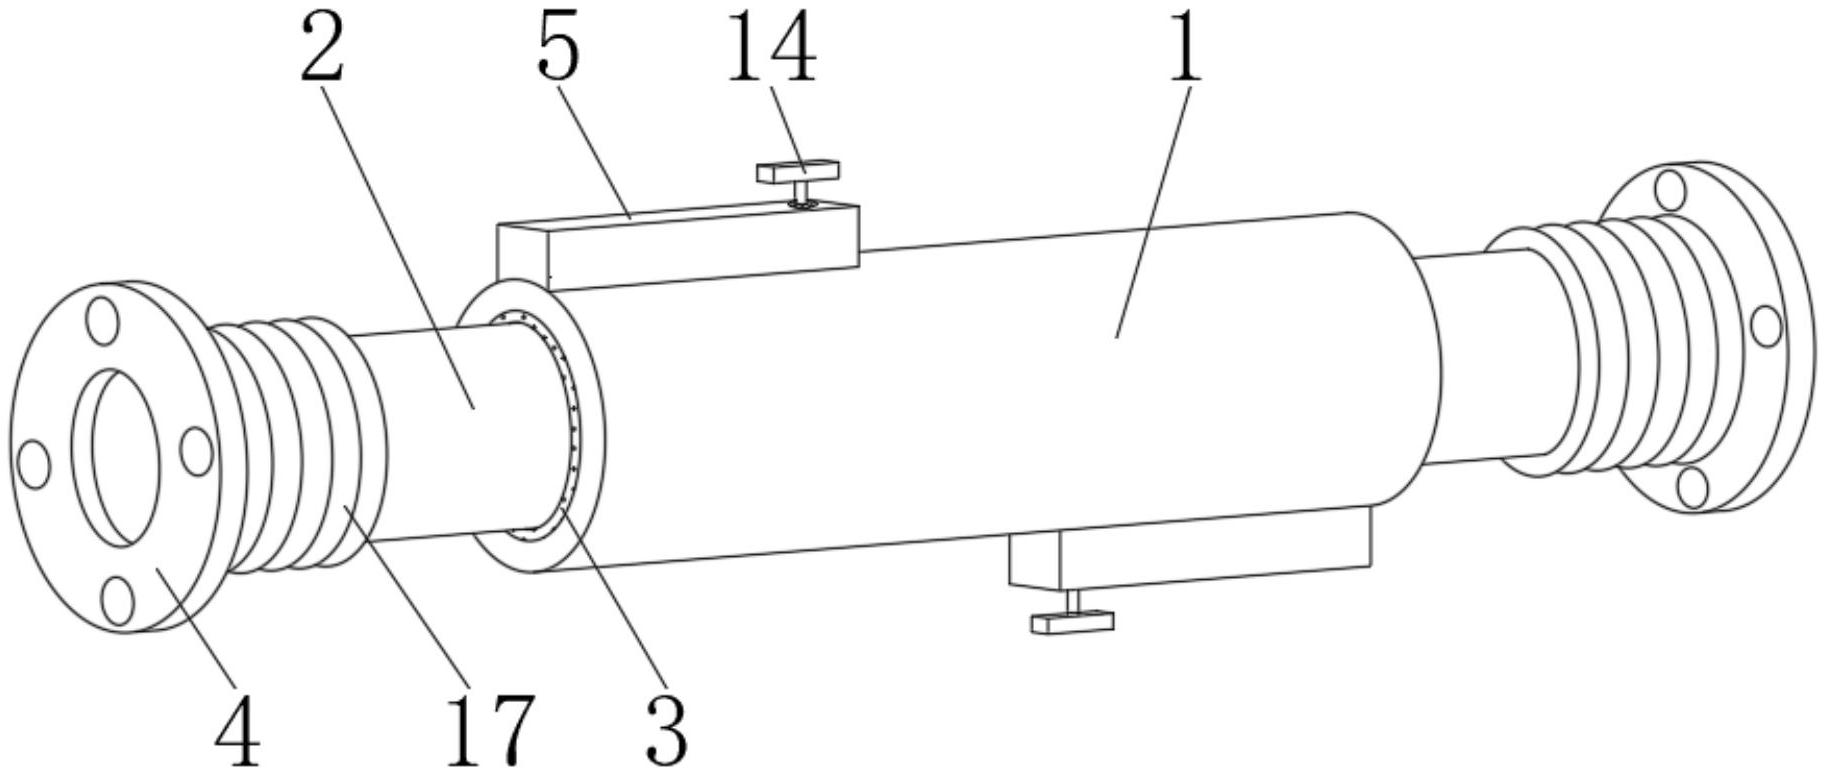 一种具有伸缩功能的PE管结构专利图